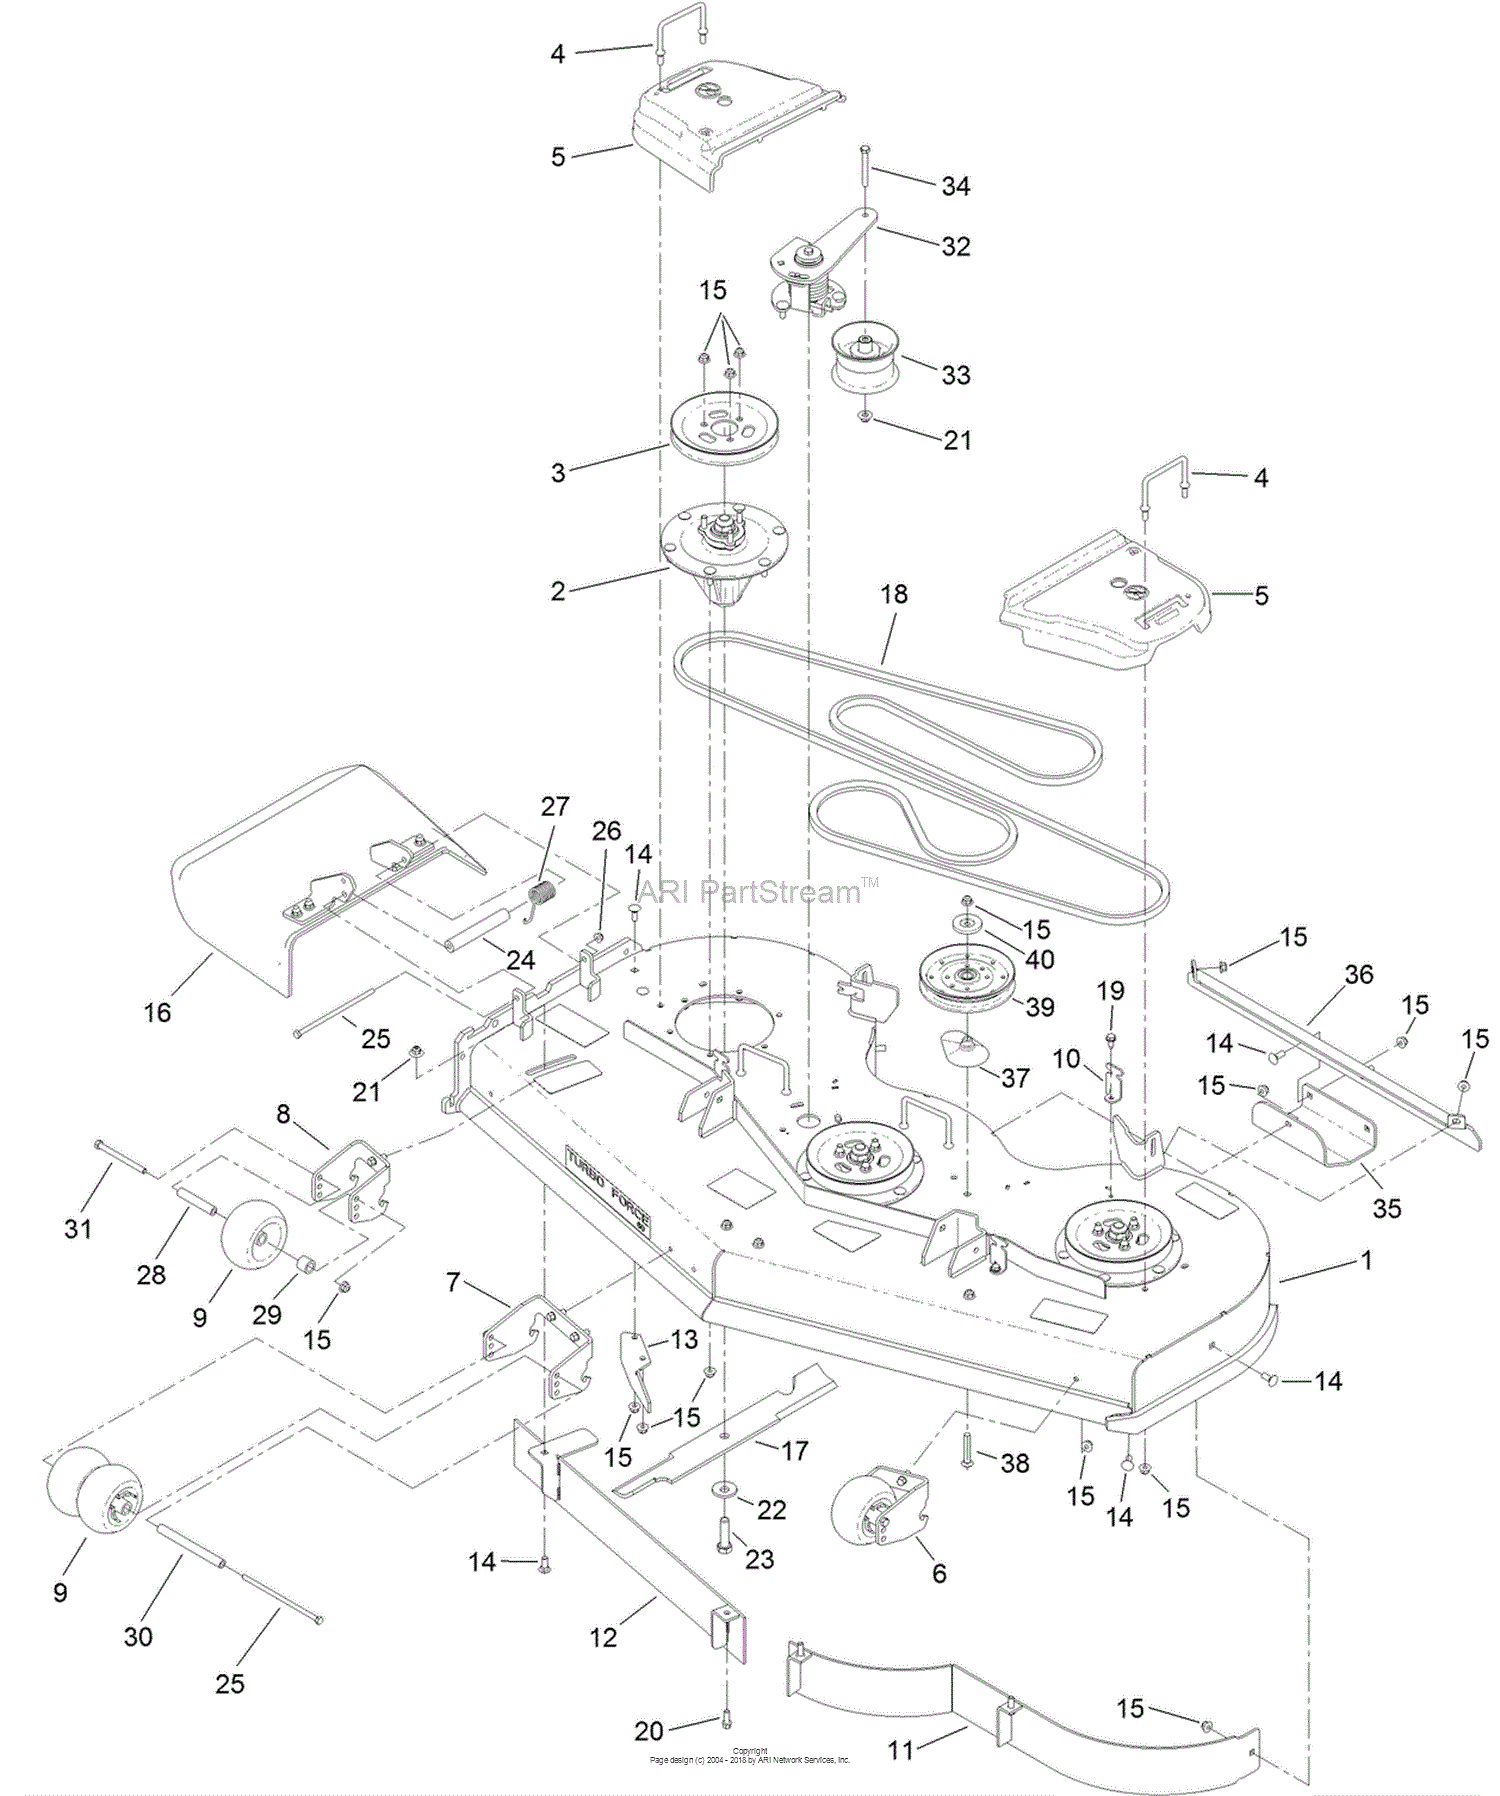 35 Predator 420cc Engine Wiring Diagram - Wiring Diagram Database